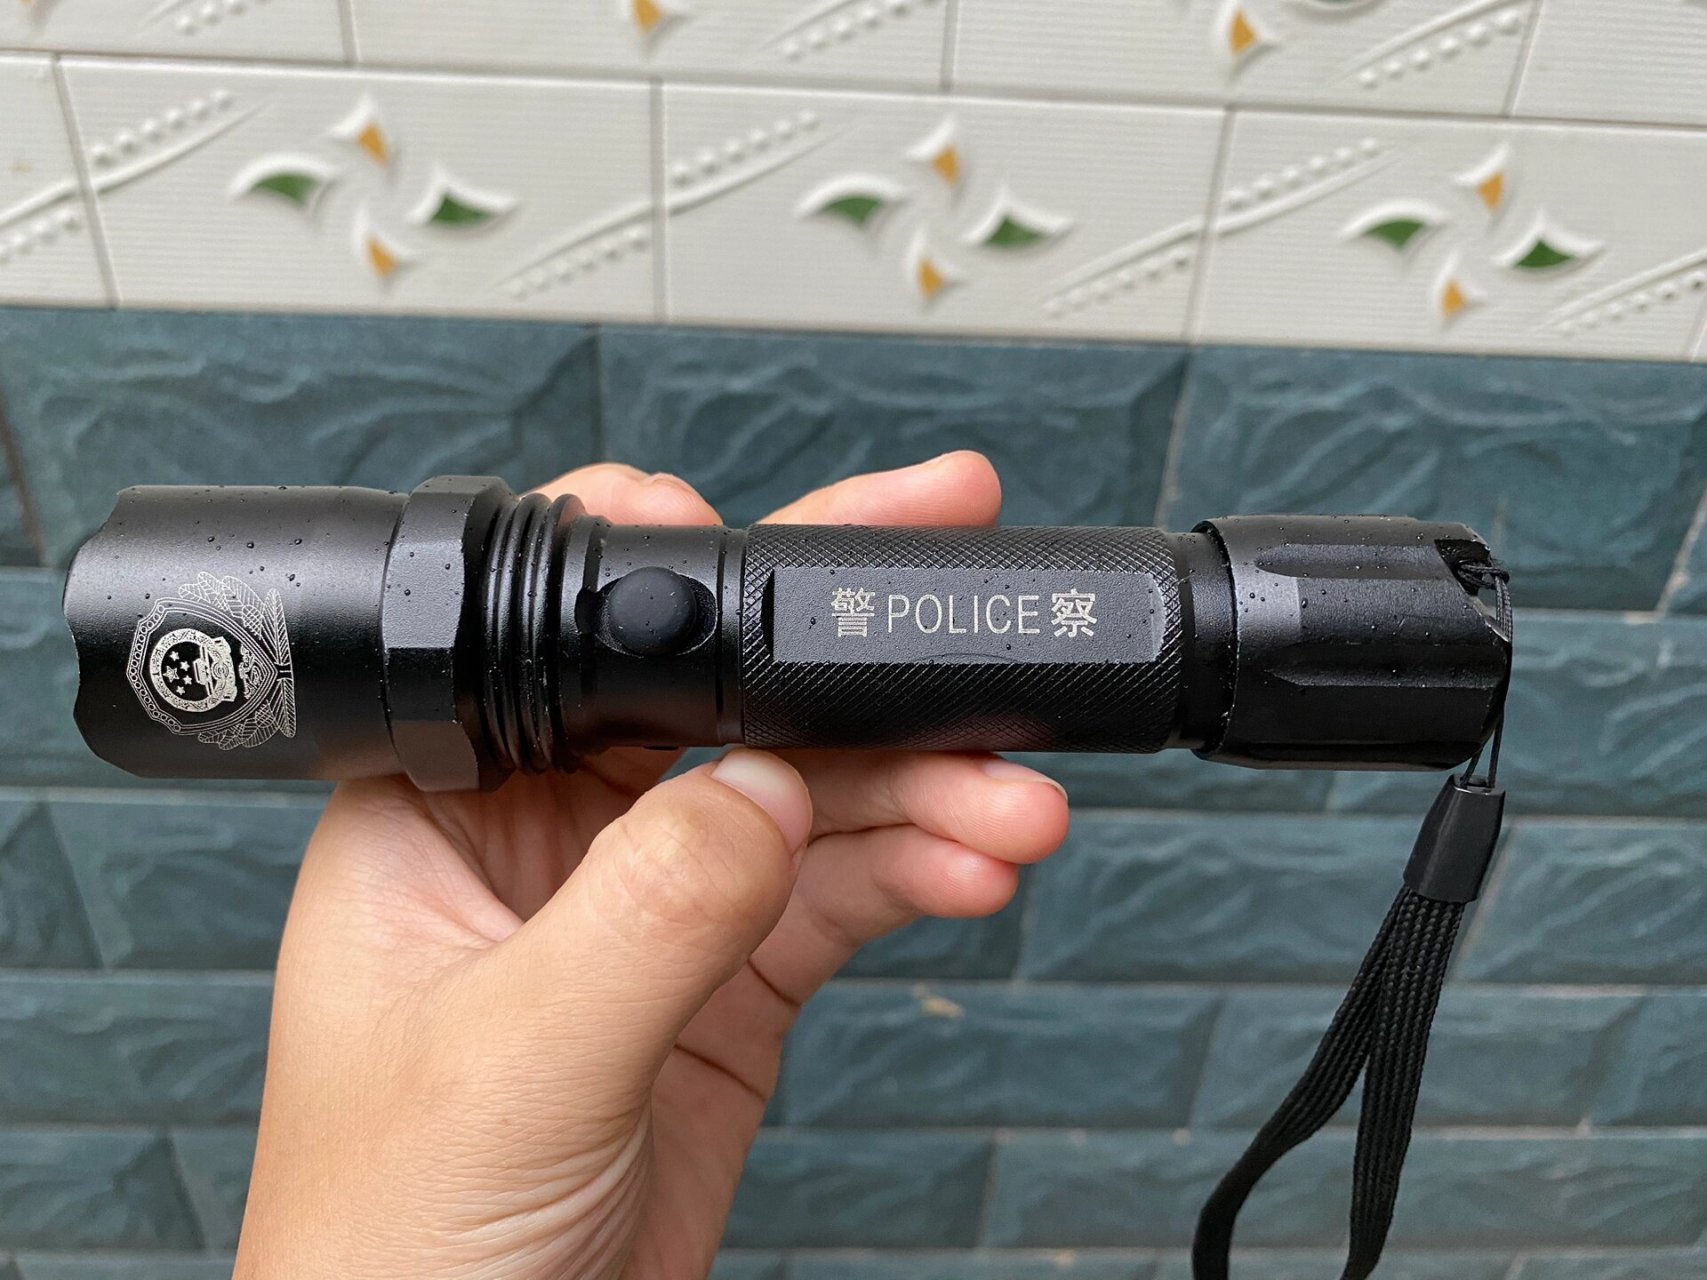 警察手电筒 我想问问这手电筒是可以买到的吗